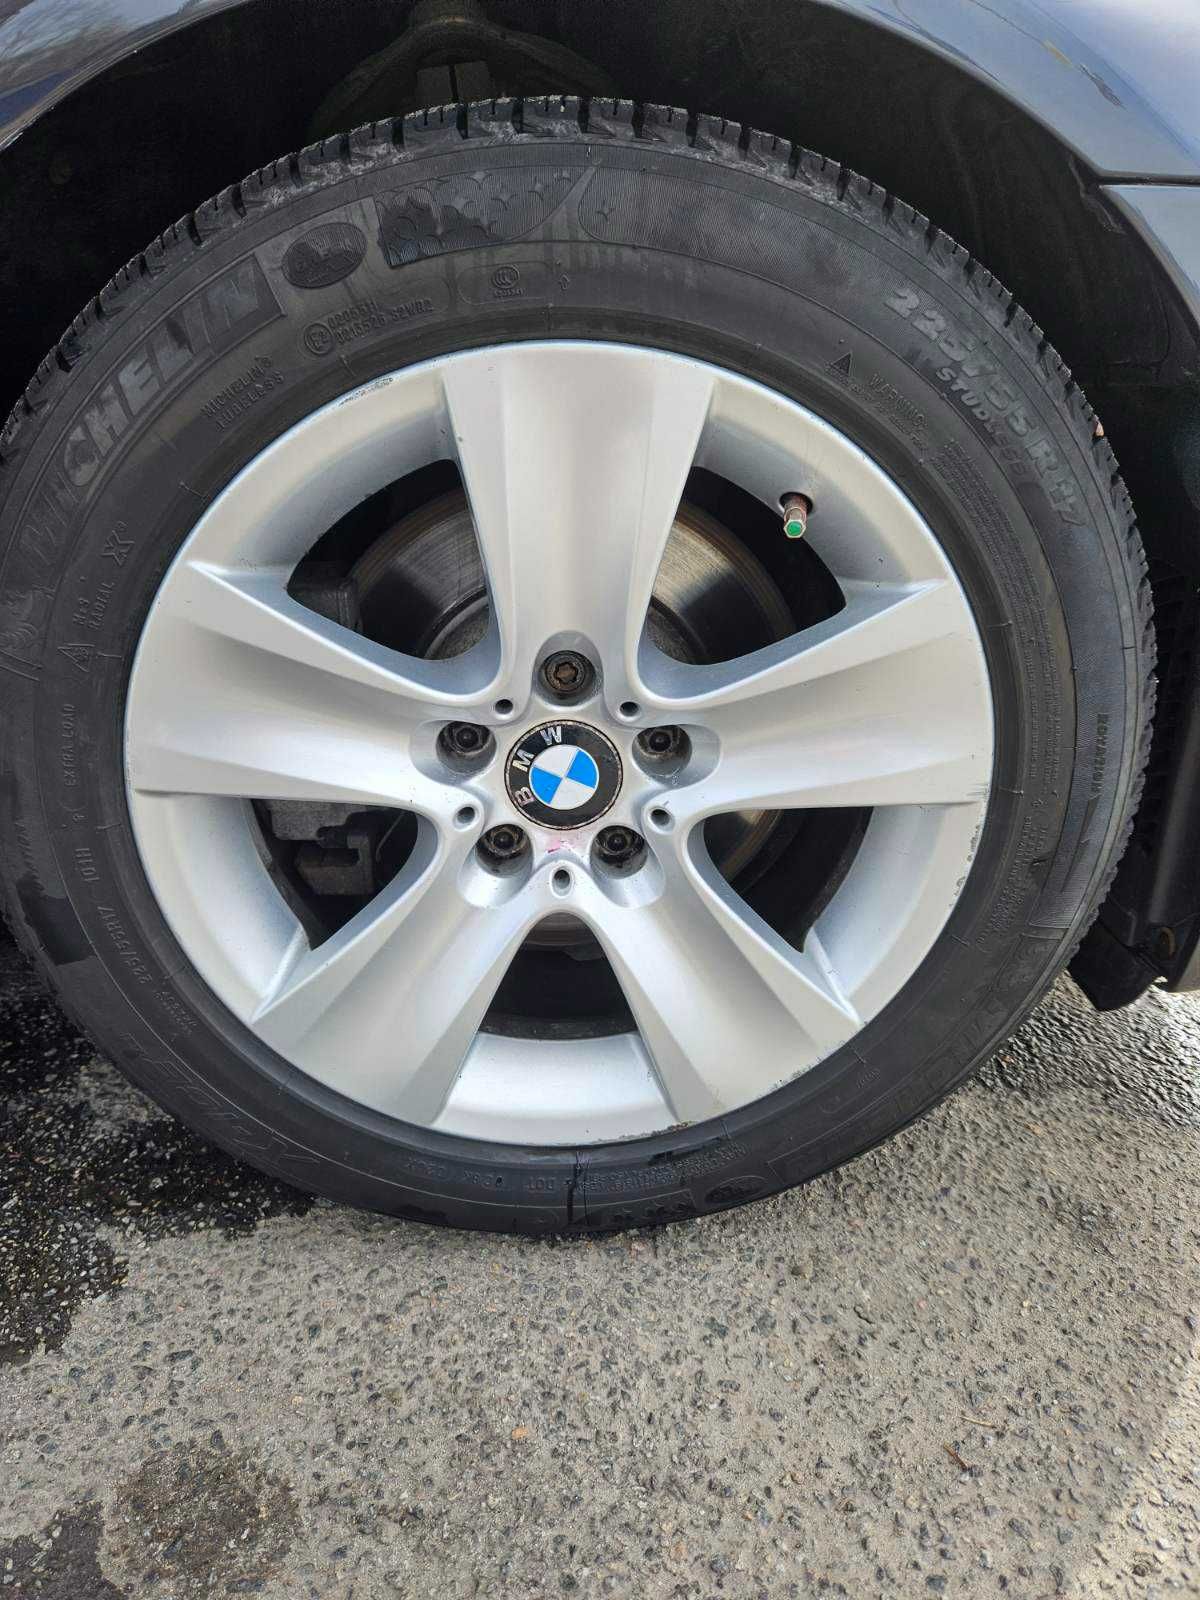 BMW Диски R17 c резиной Michelin X - ICE М+S зима Оригинал